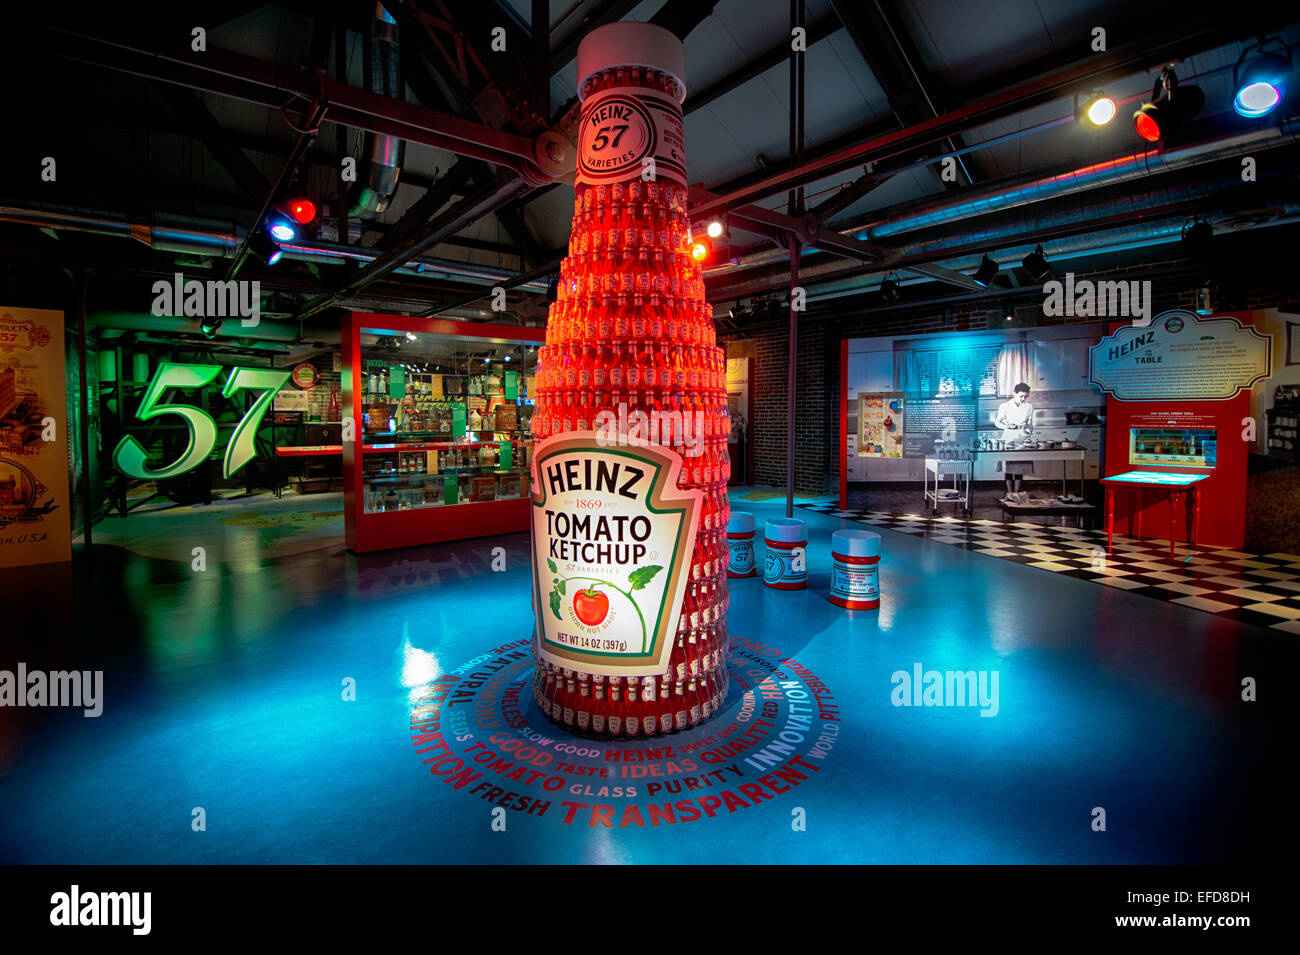 Großen Ketchup-Flaschen sind eine vorstehende Eigenschaft, die die Geschichte der h.j. Heinz Company im Heinz History Center Stockfoto